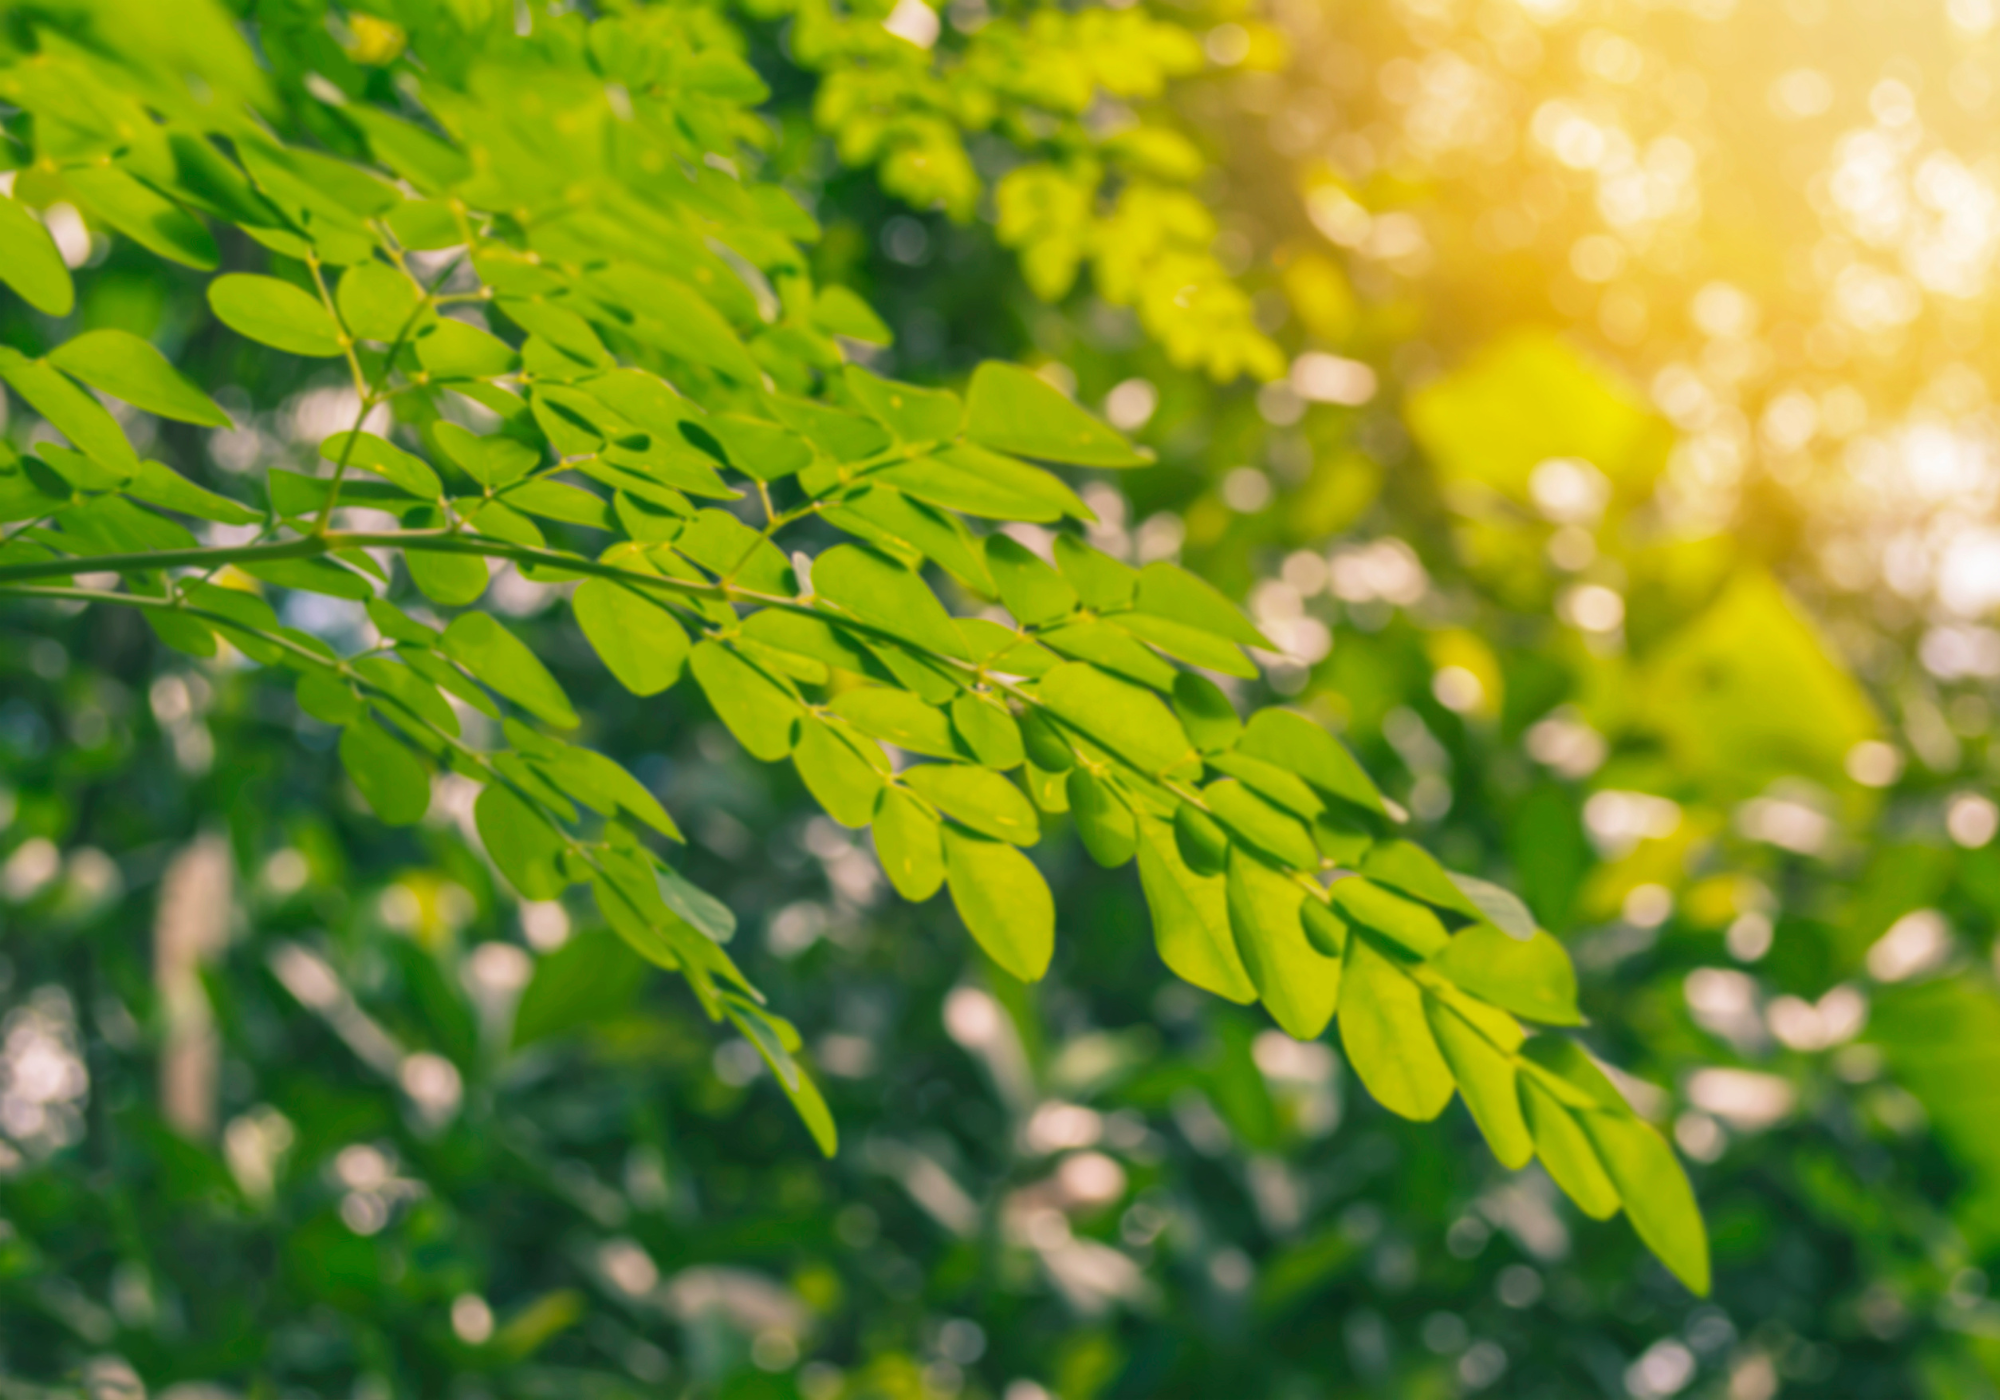 Moringa oleifera tree leaves benefits